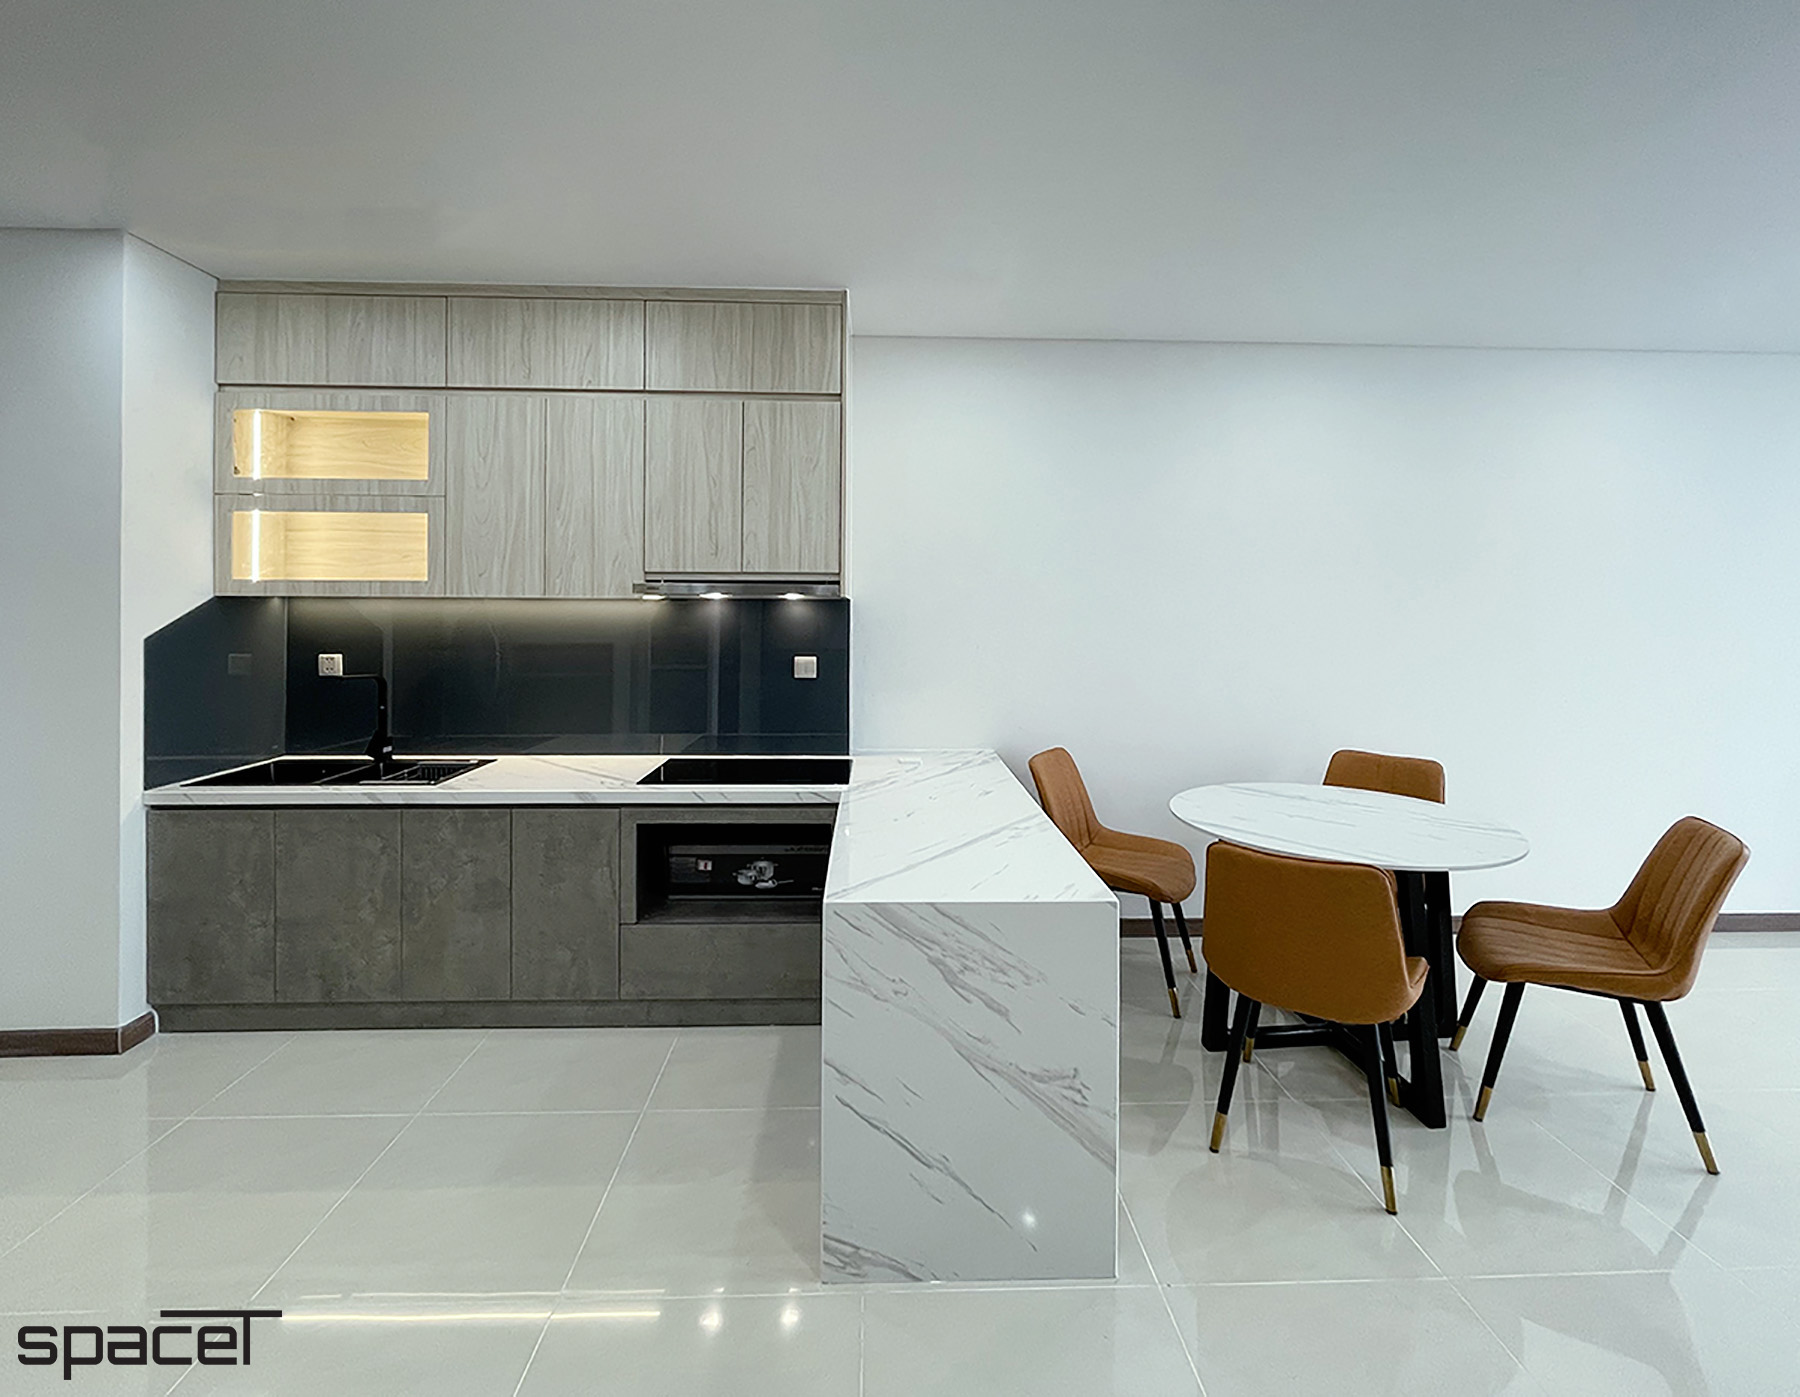 Phòng ăn, phong cách Hiện đại Modern, hoàn thiện nội thất, căn hộ Iris 4 Hà Đô Centrosa Garden